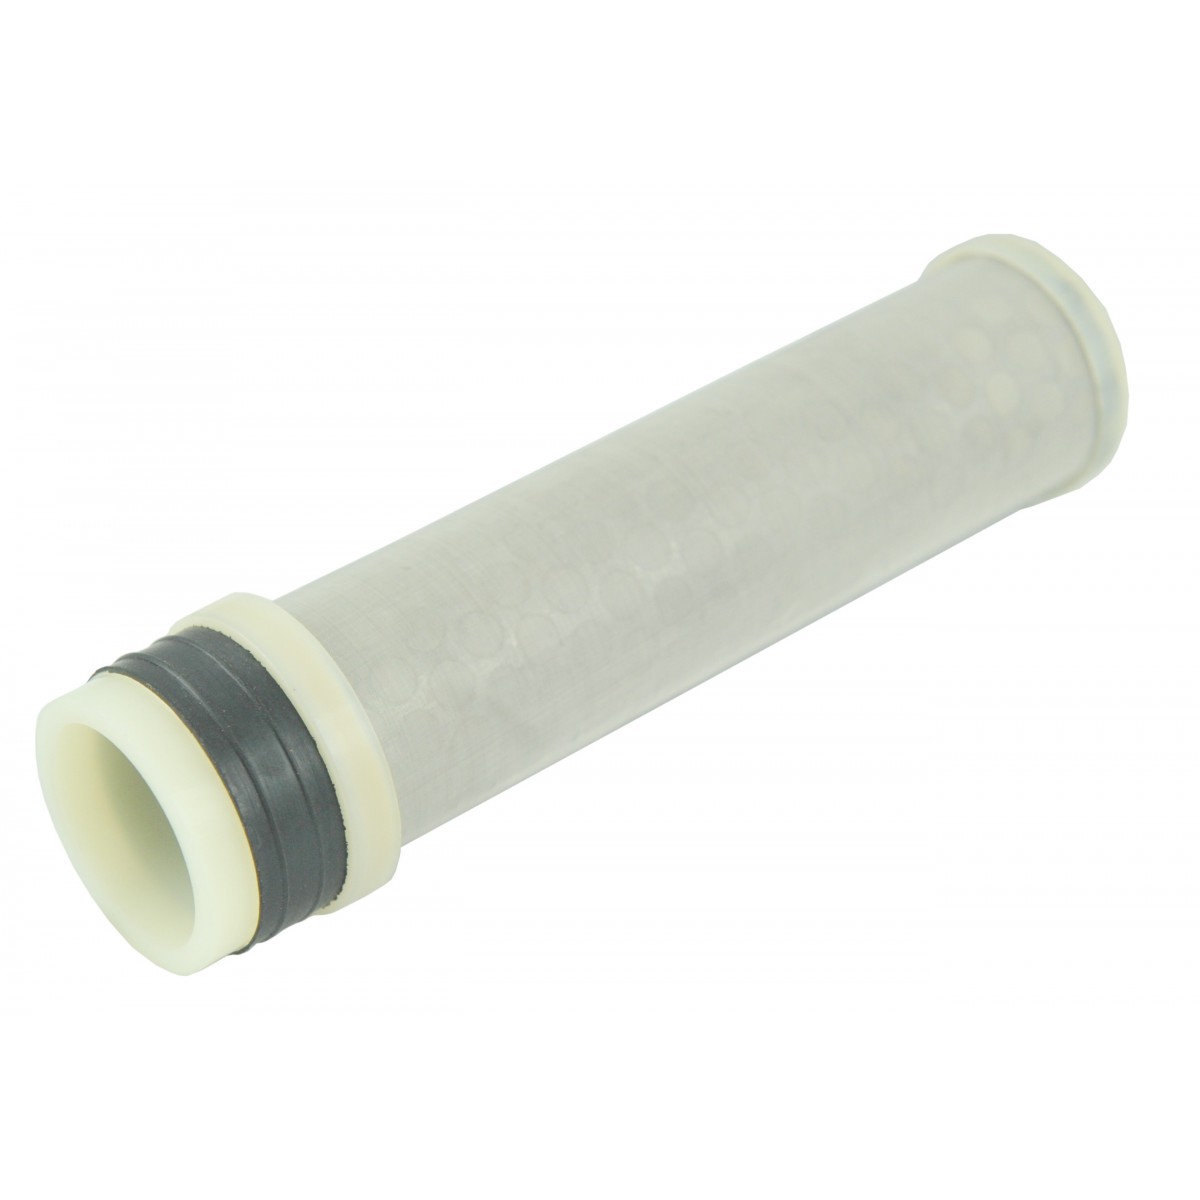 Kubota air filter B2140-B2440, internal filter, air filter element